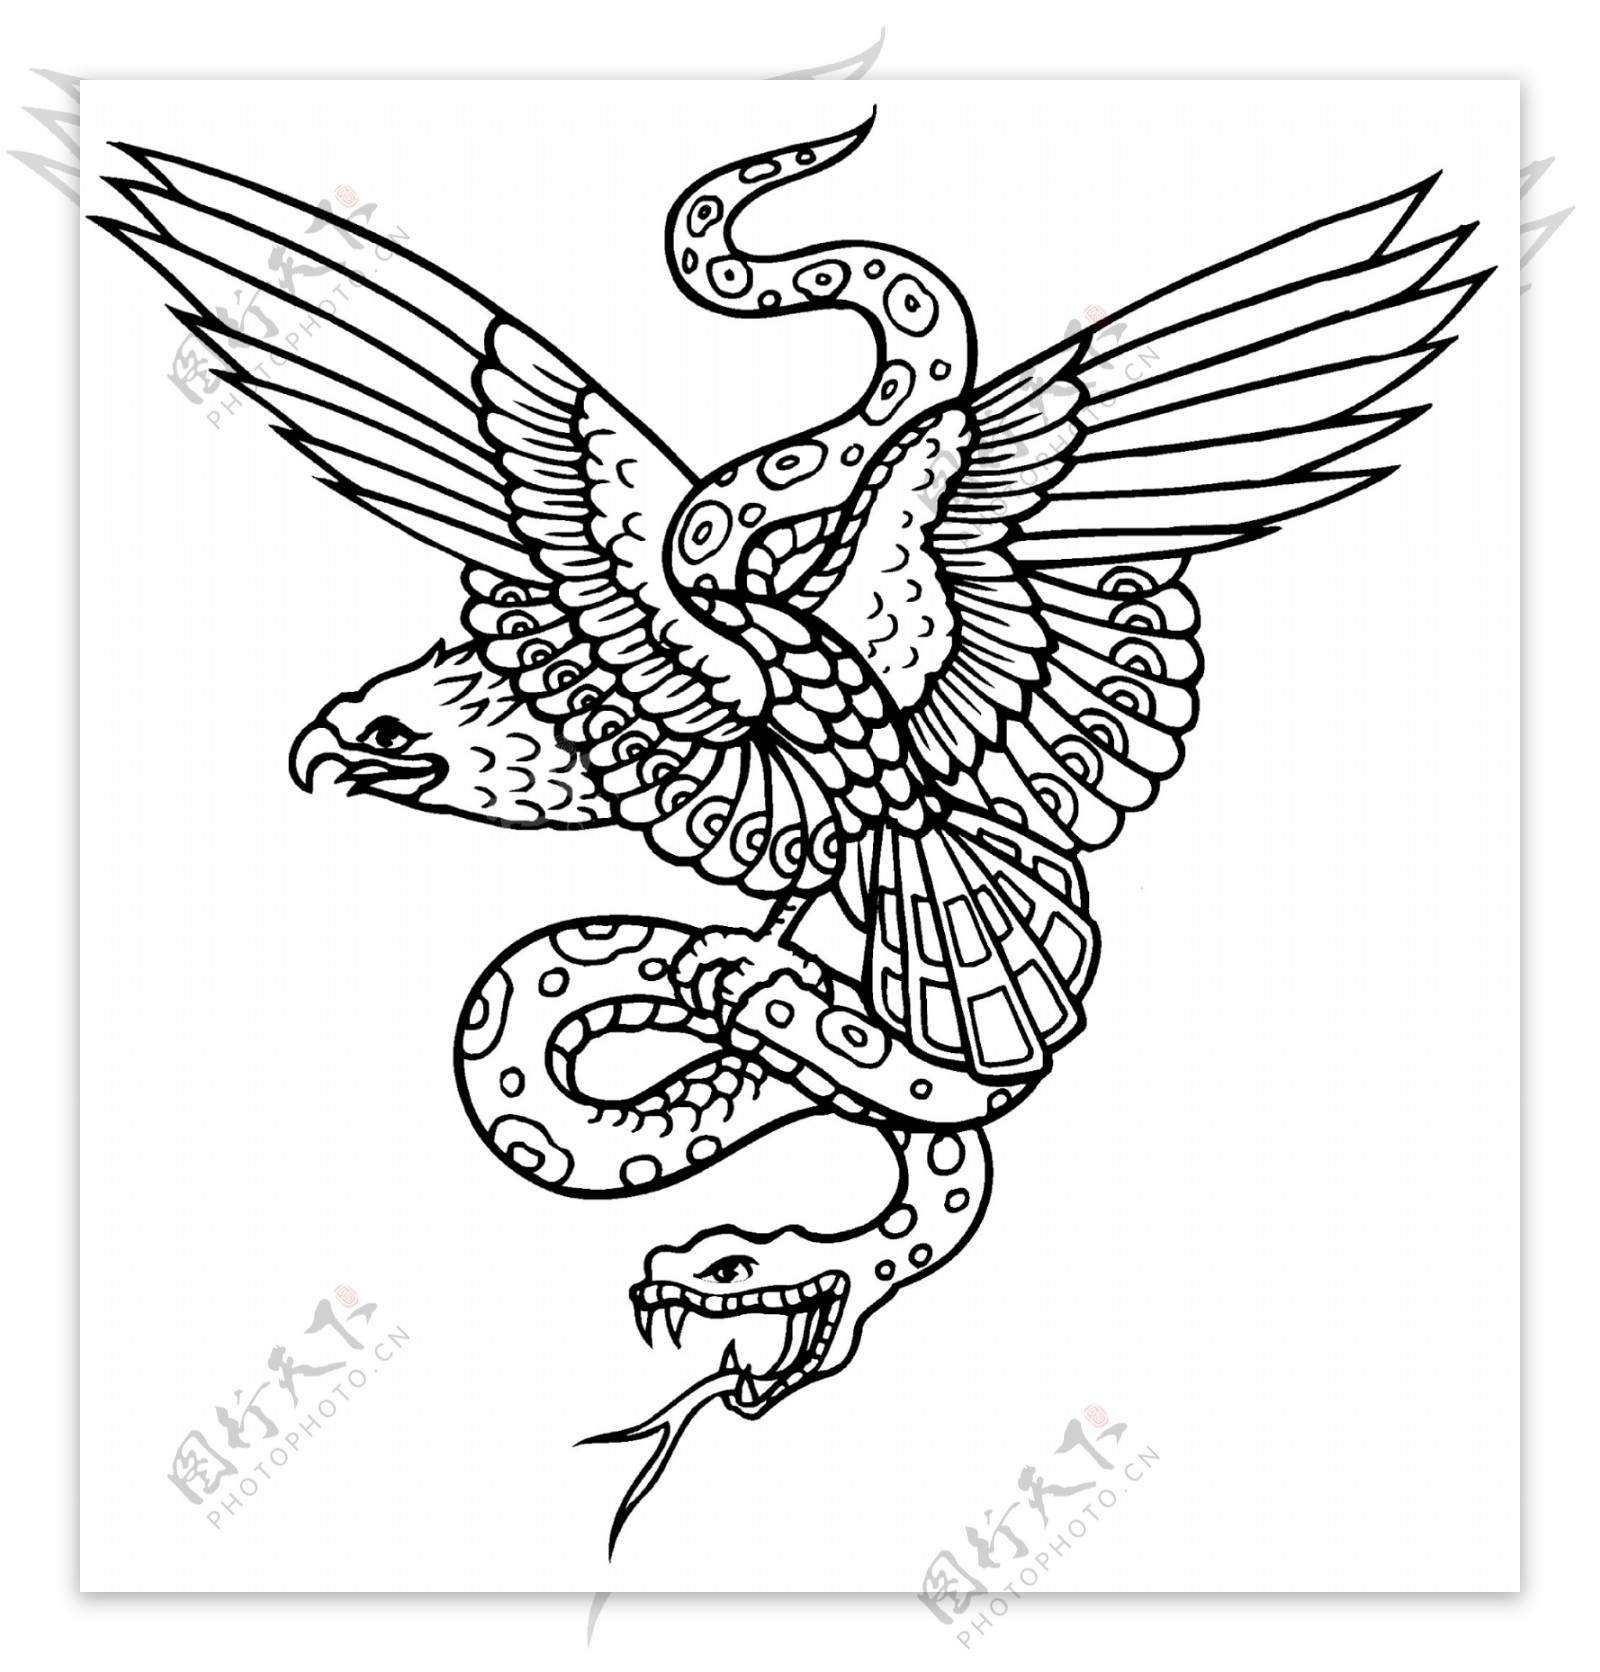 鹰猎蛇纹身图标